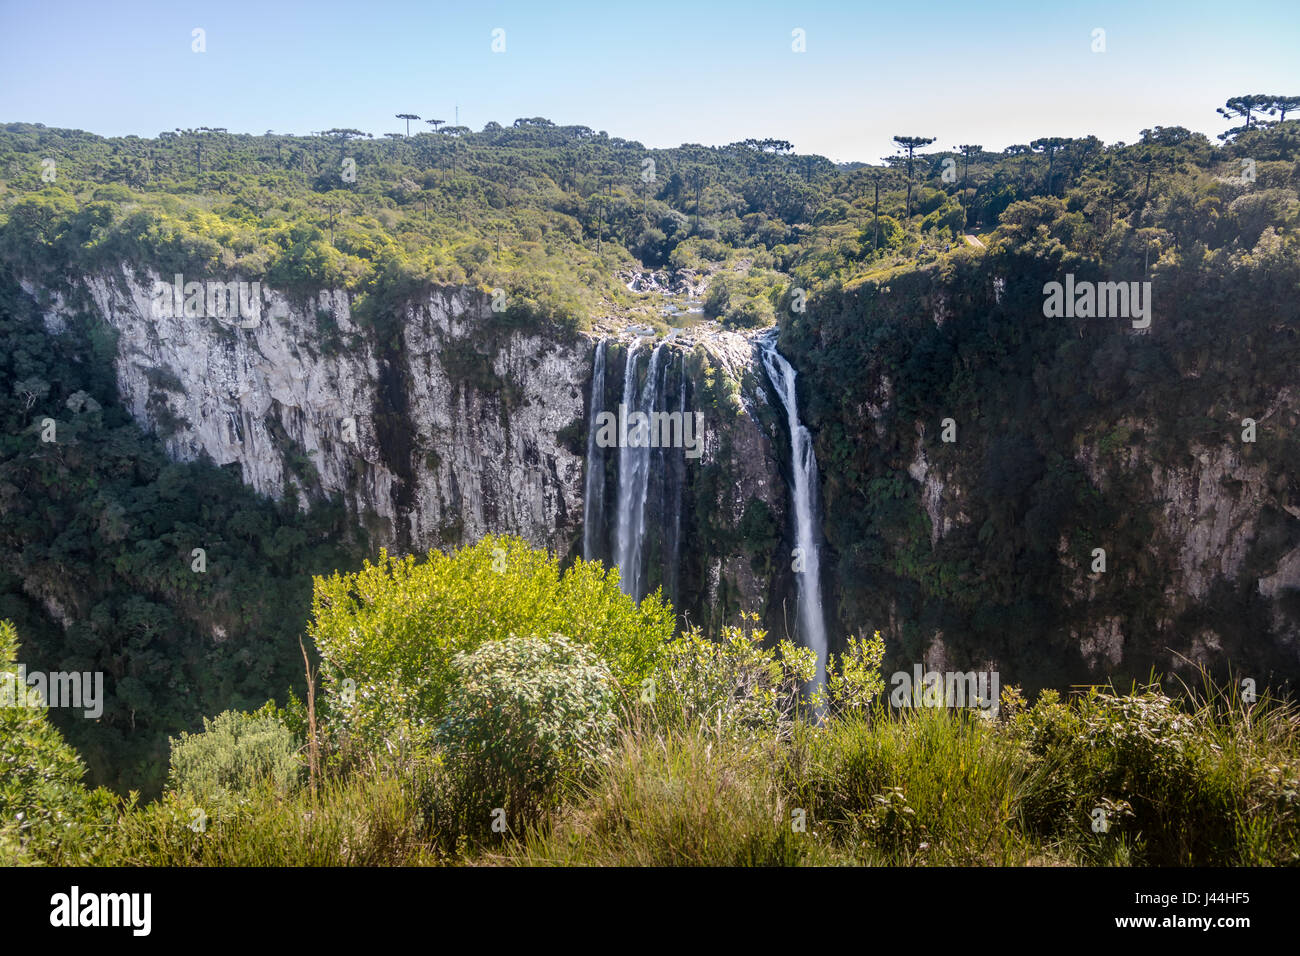 Waterfall of Itaimbezinho Canyon at Aparados da Serra National Park - Cambara do Sul, Rio Grande do Sul, Brazil Stock Photo